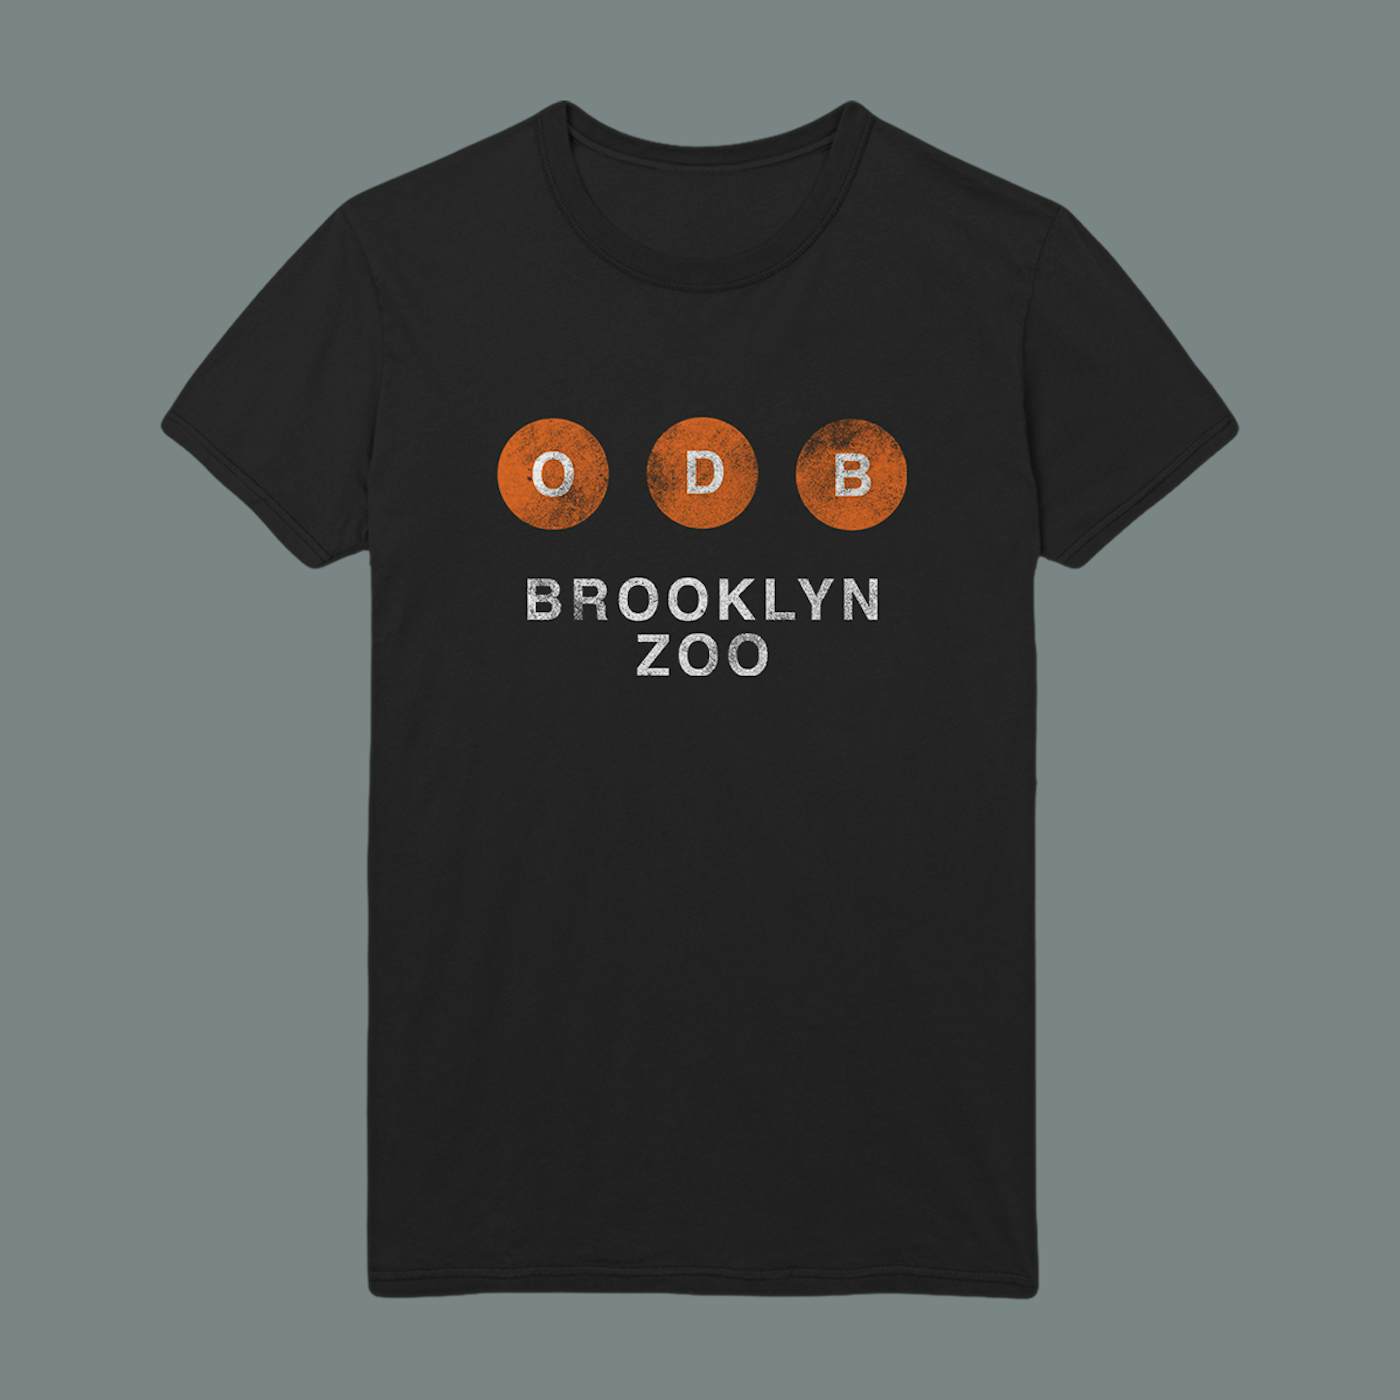 Ol' Dirty Bastard Brooklyn Zoo Tee